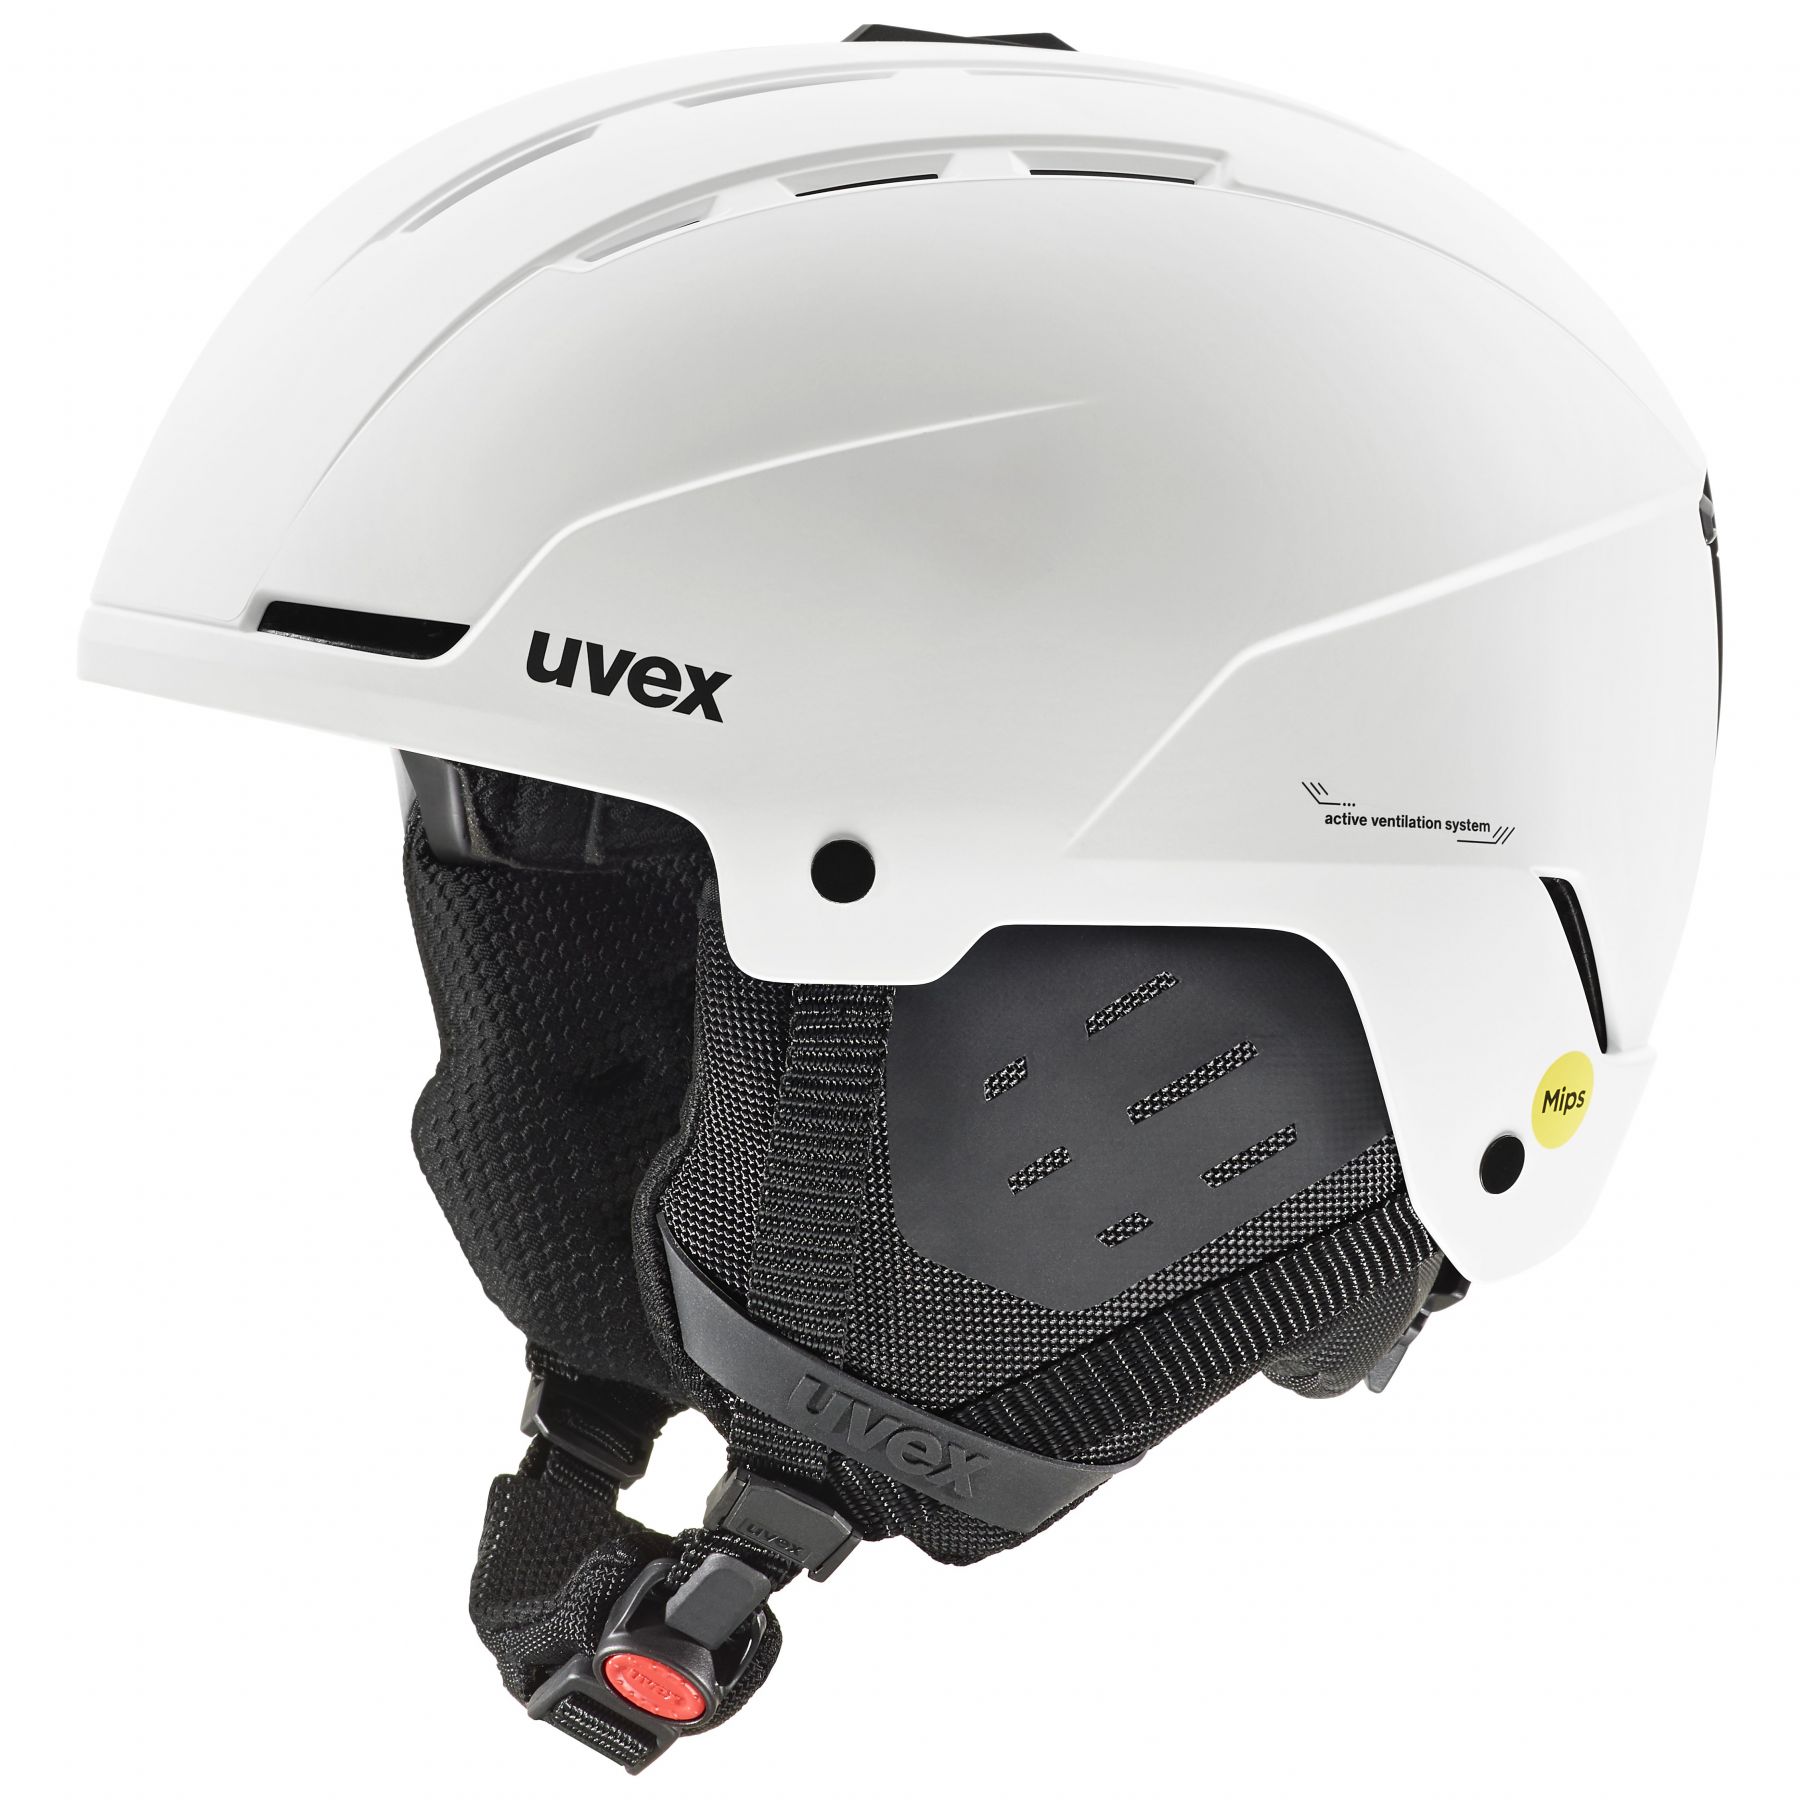 Se Uvex Stance MIPS, skihjelm, hvid hos AktivVinter.dk